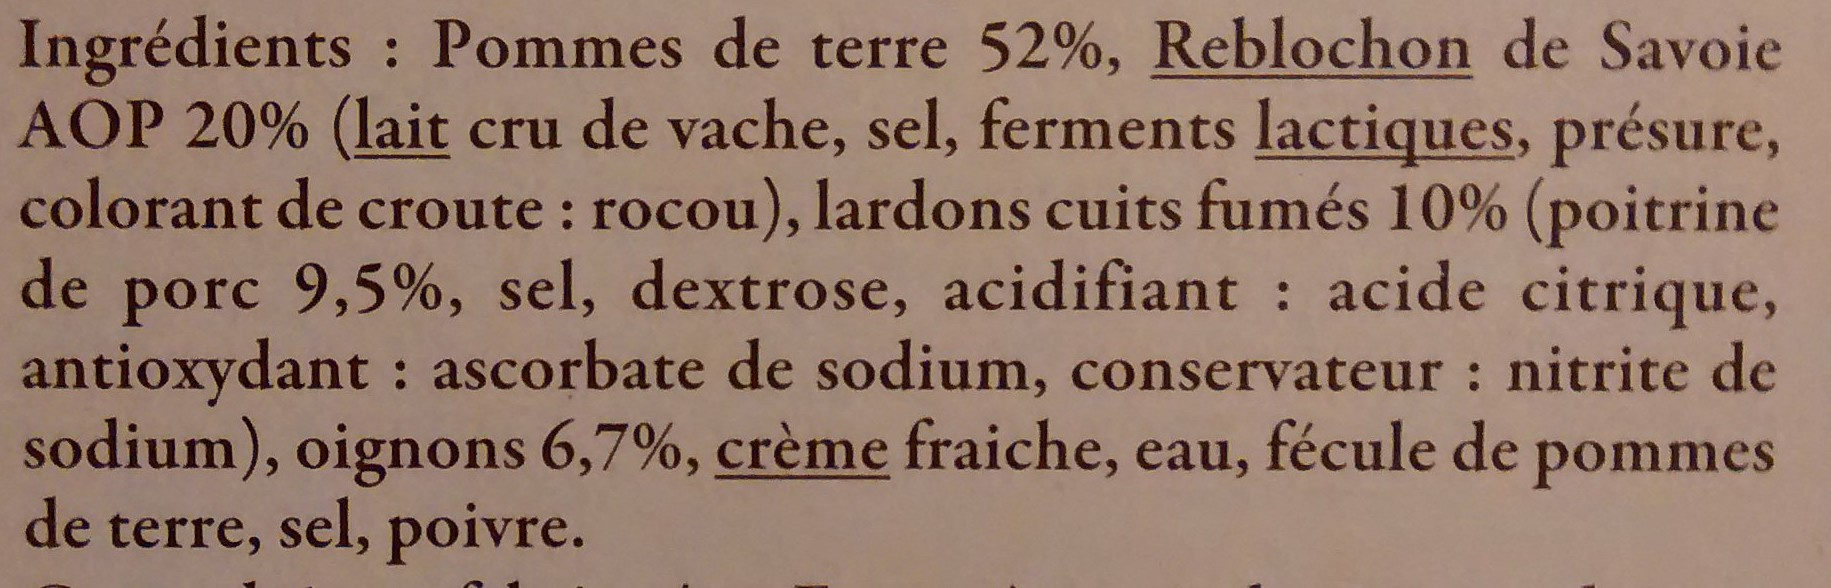 Tartiflette au Reblochon de Savoie Label Rouge - Ingredienser - fr